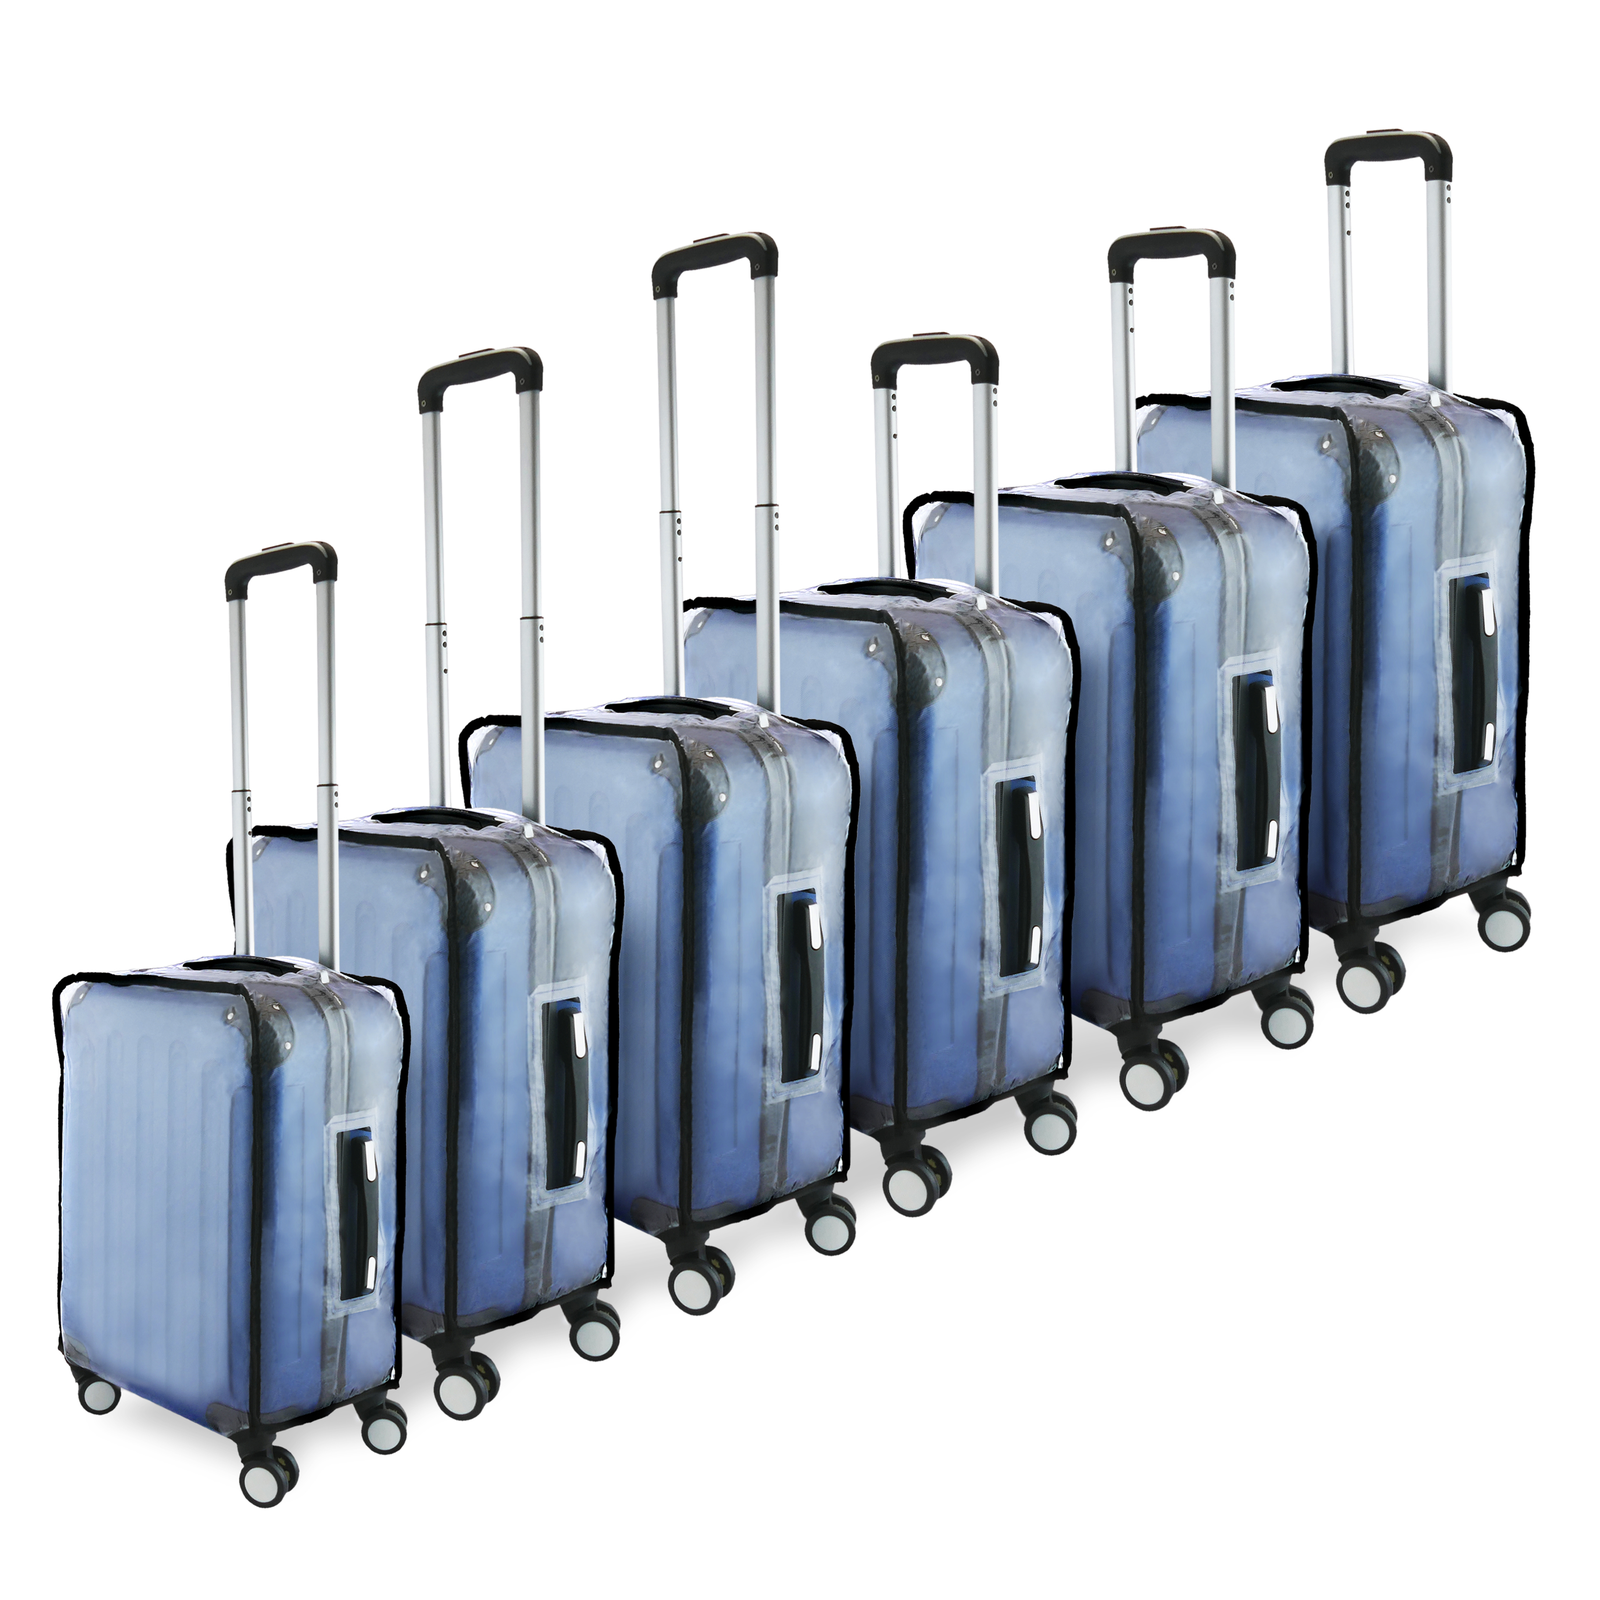 1 funda protectora de poliéster para equipaje de viaje, funda elástica  lavable para maleta, funda de equipaje para equipaje de 19 a 21 pulgadas,  azul